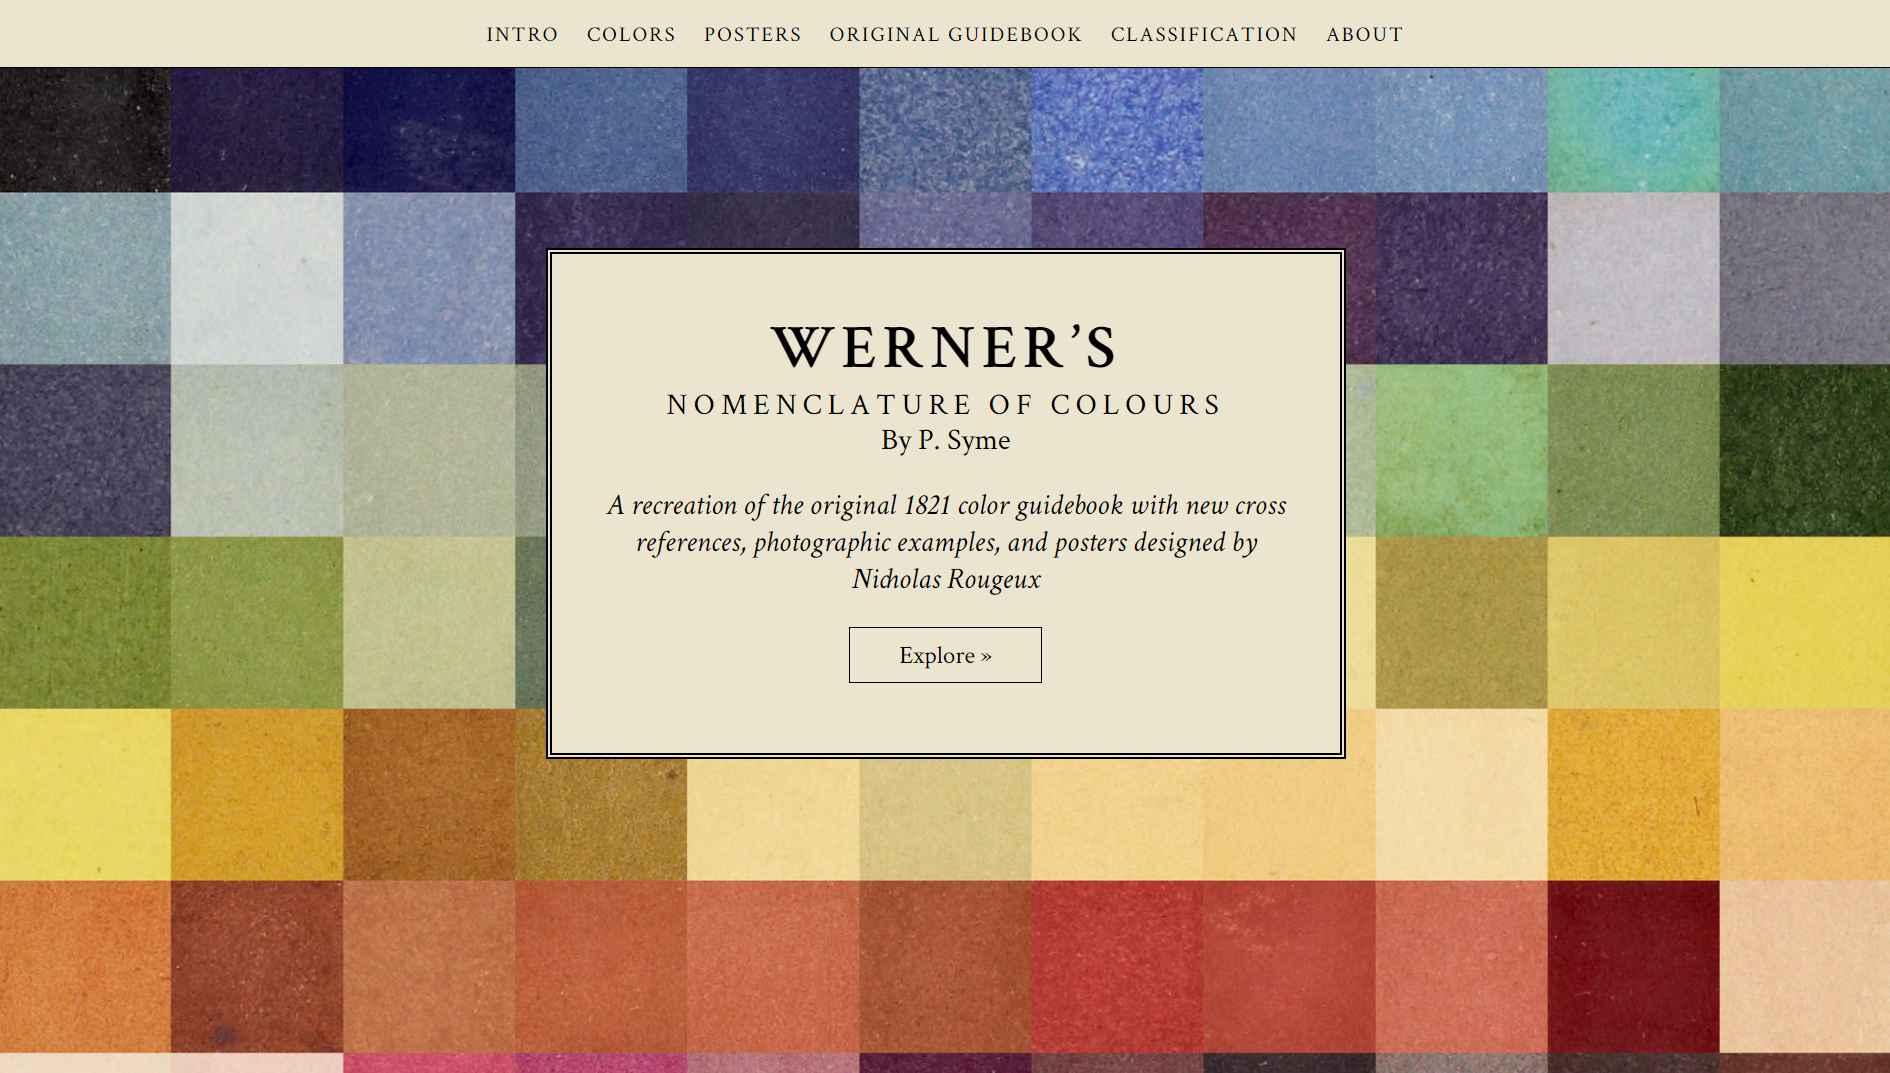 La nomenclature des couleurs de Werner, entièrement recréée sur ce site interactif